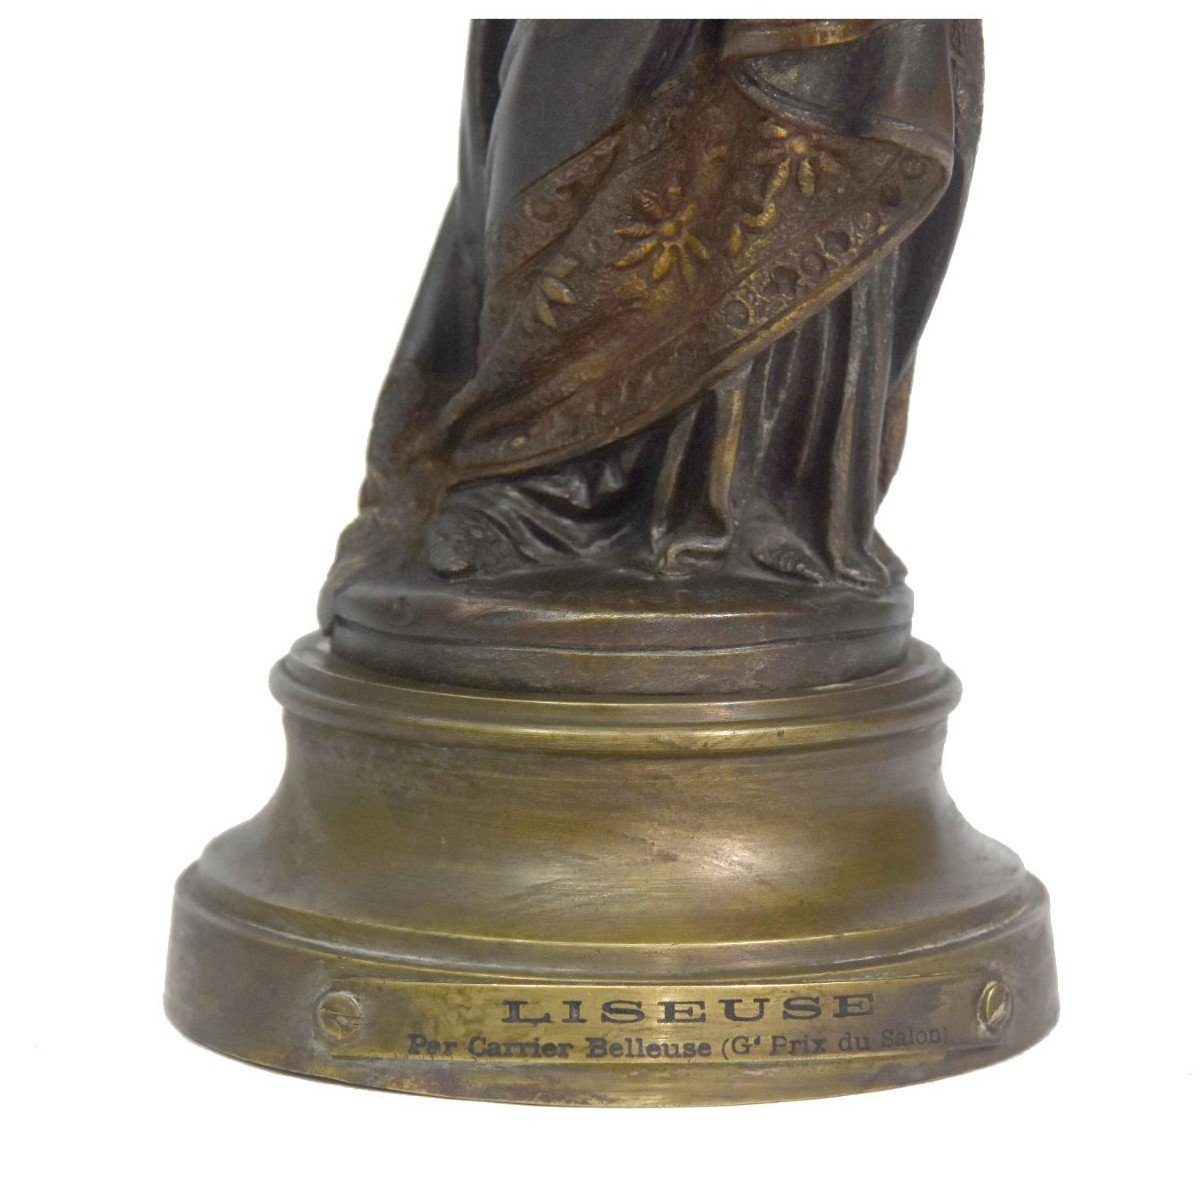 "'La liseuse" de Carrier Belleuse bronze patiné doré époque fin XIXème-photo-1